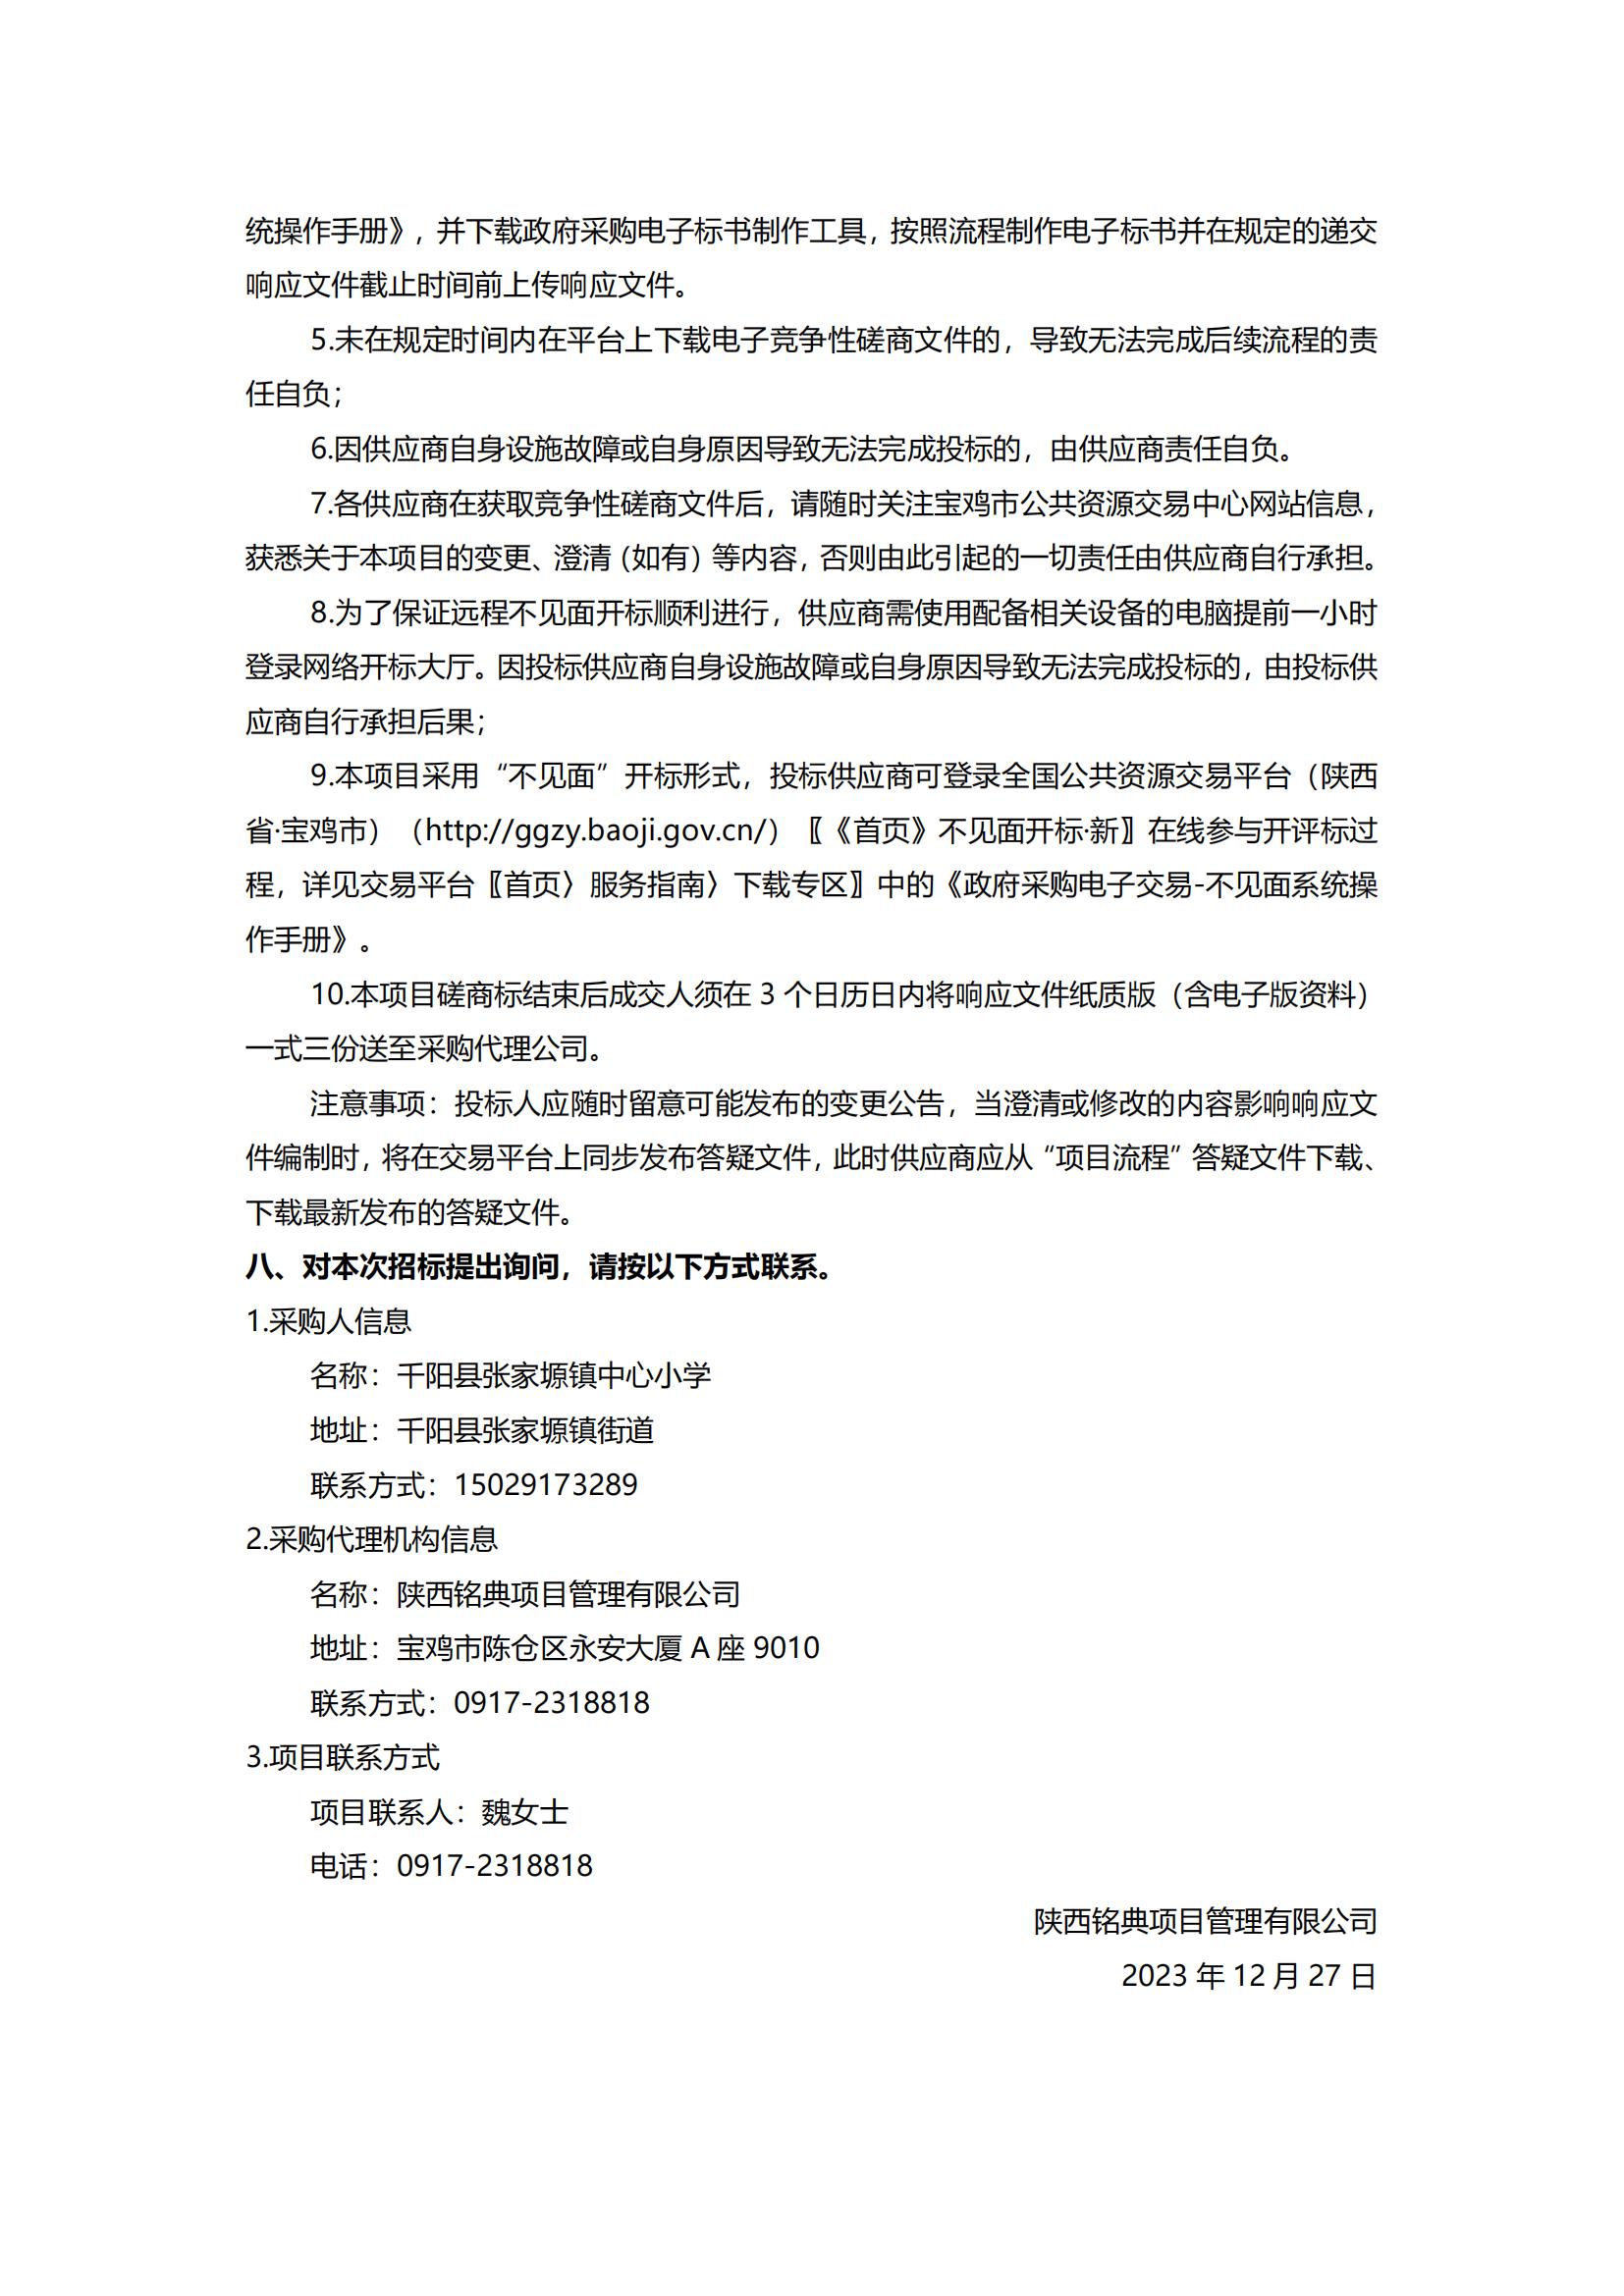 千阳县张家塬镇中心小学院落提升改造工程竞争性磋商公告_03.jpg